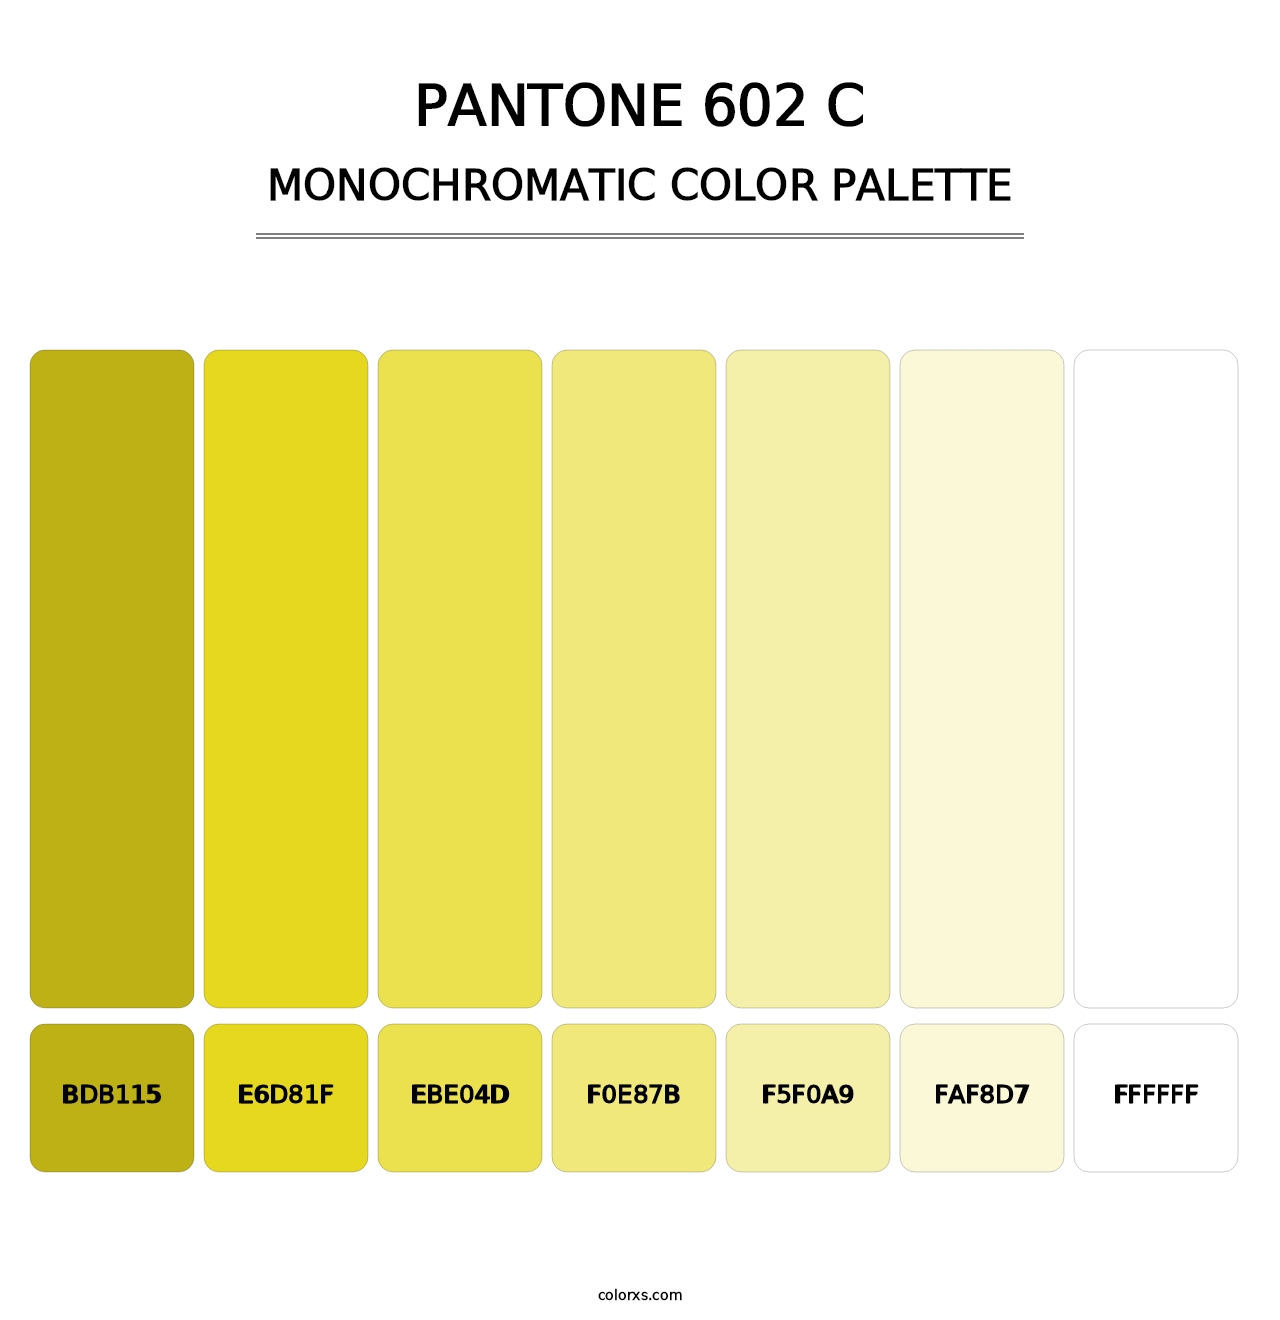 PANTONE 602 C - Monochromatic Color Palette